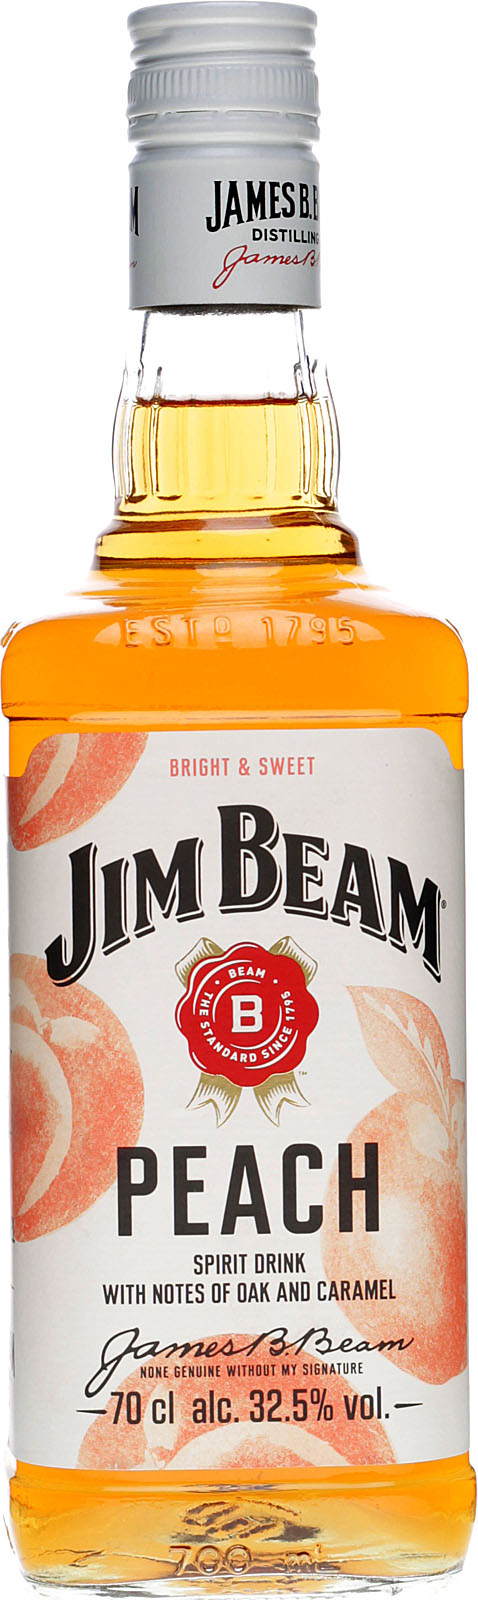 Beam Jim Liter Peach im Shop 0,7 % 32,5 Vol.